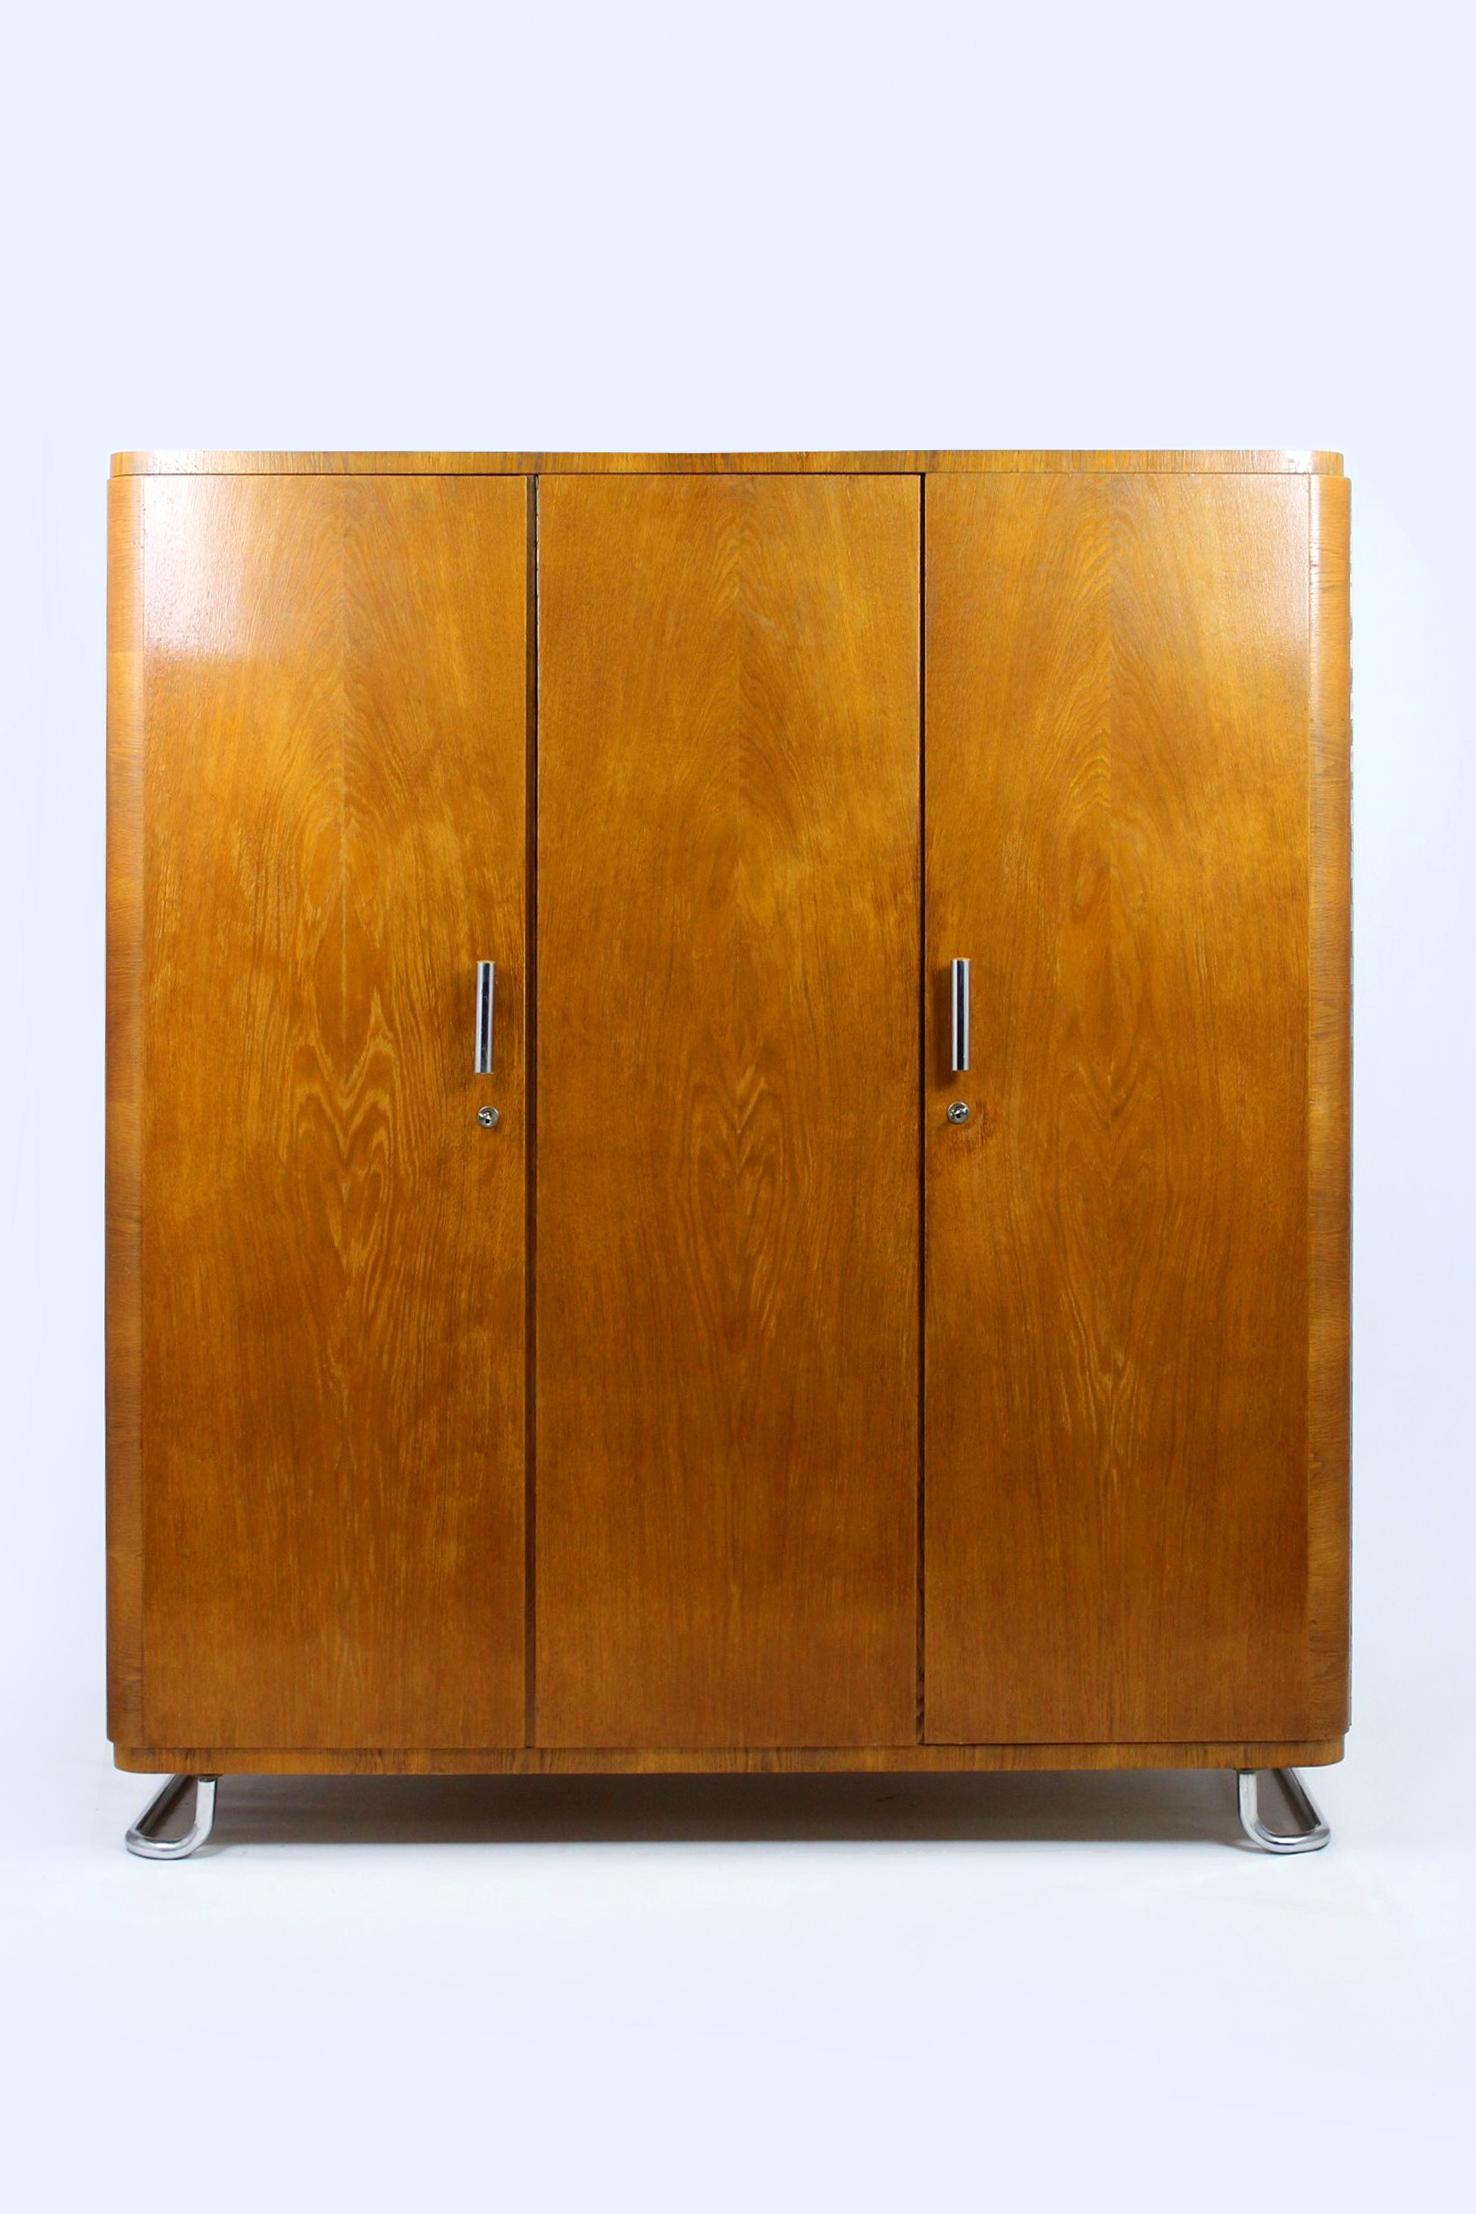 Cette armoire de style Bauhaus a été produite par Hynek Gottwald en Tchécoslovaquie dans les années 1930. Elle est dotée de trois portes, d'un portemanteau intérieur et de cinq étagères. L'armoire repose sur des pieds chromés et possède des poignées